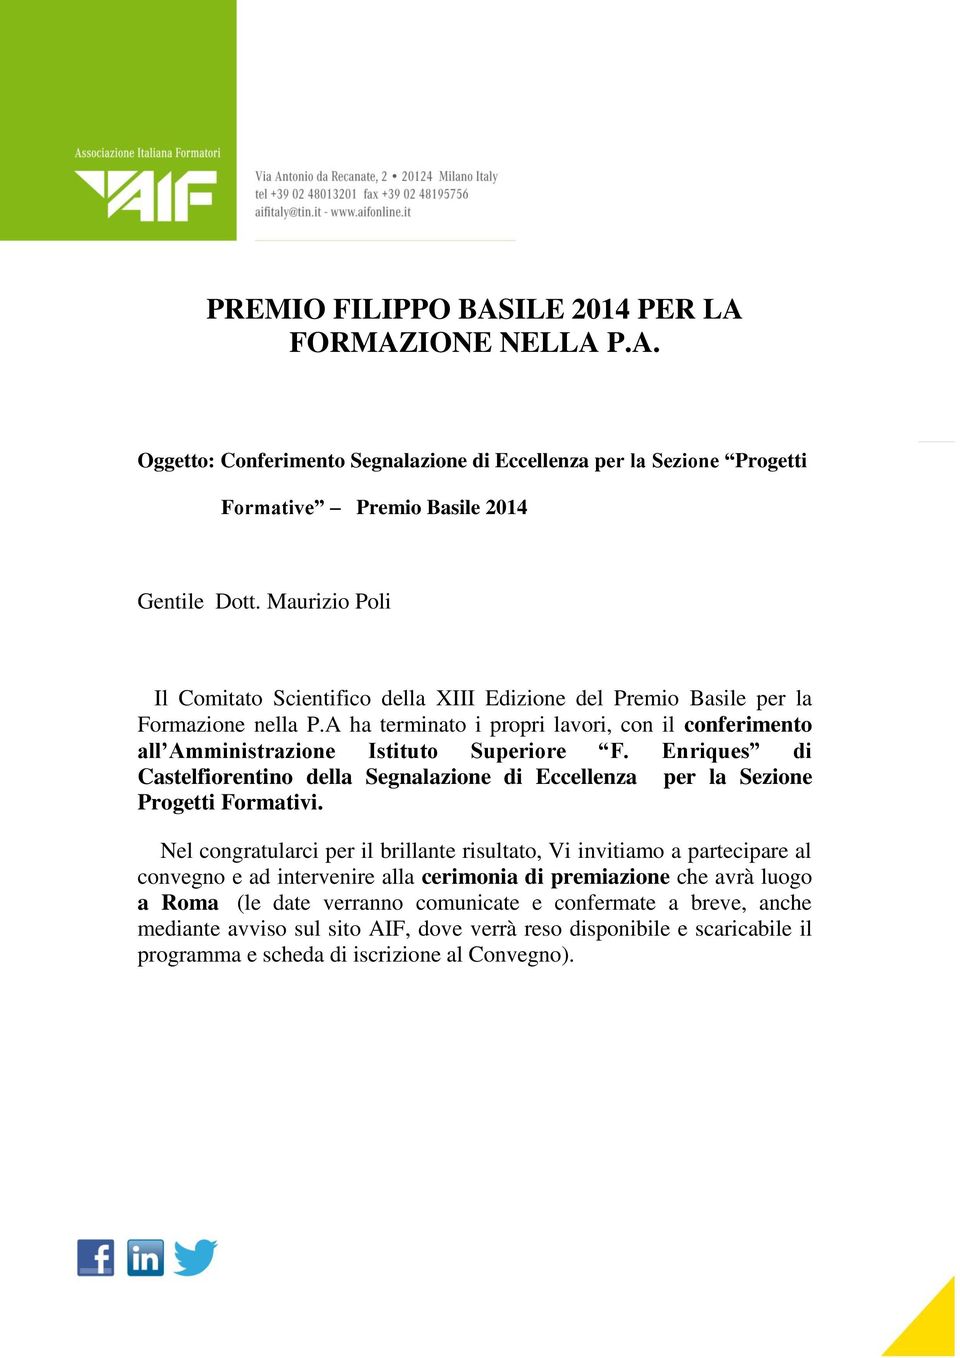 Enriques di Castelfiorentino della Segnalazione di Eccellenza per la Sezione Progetti Formativi.